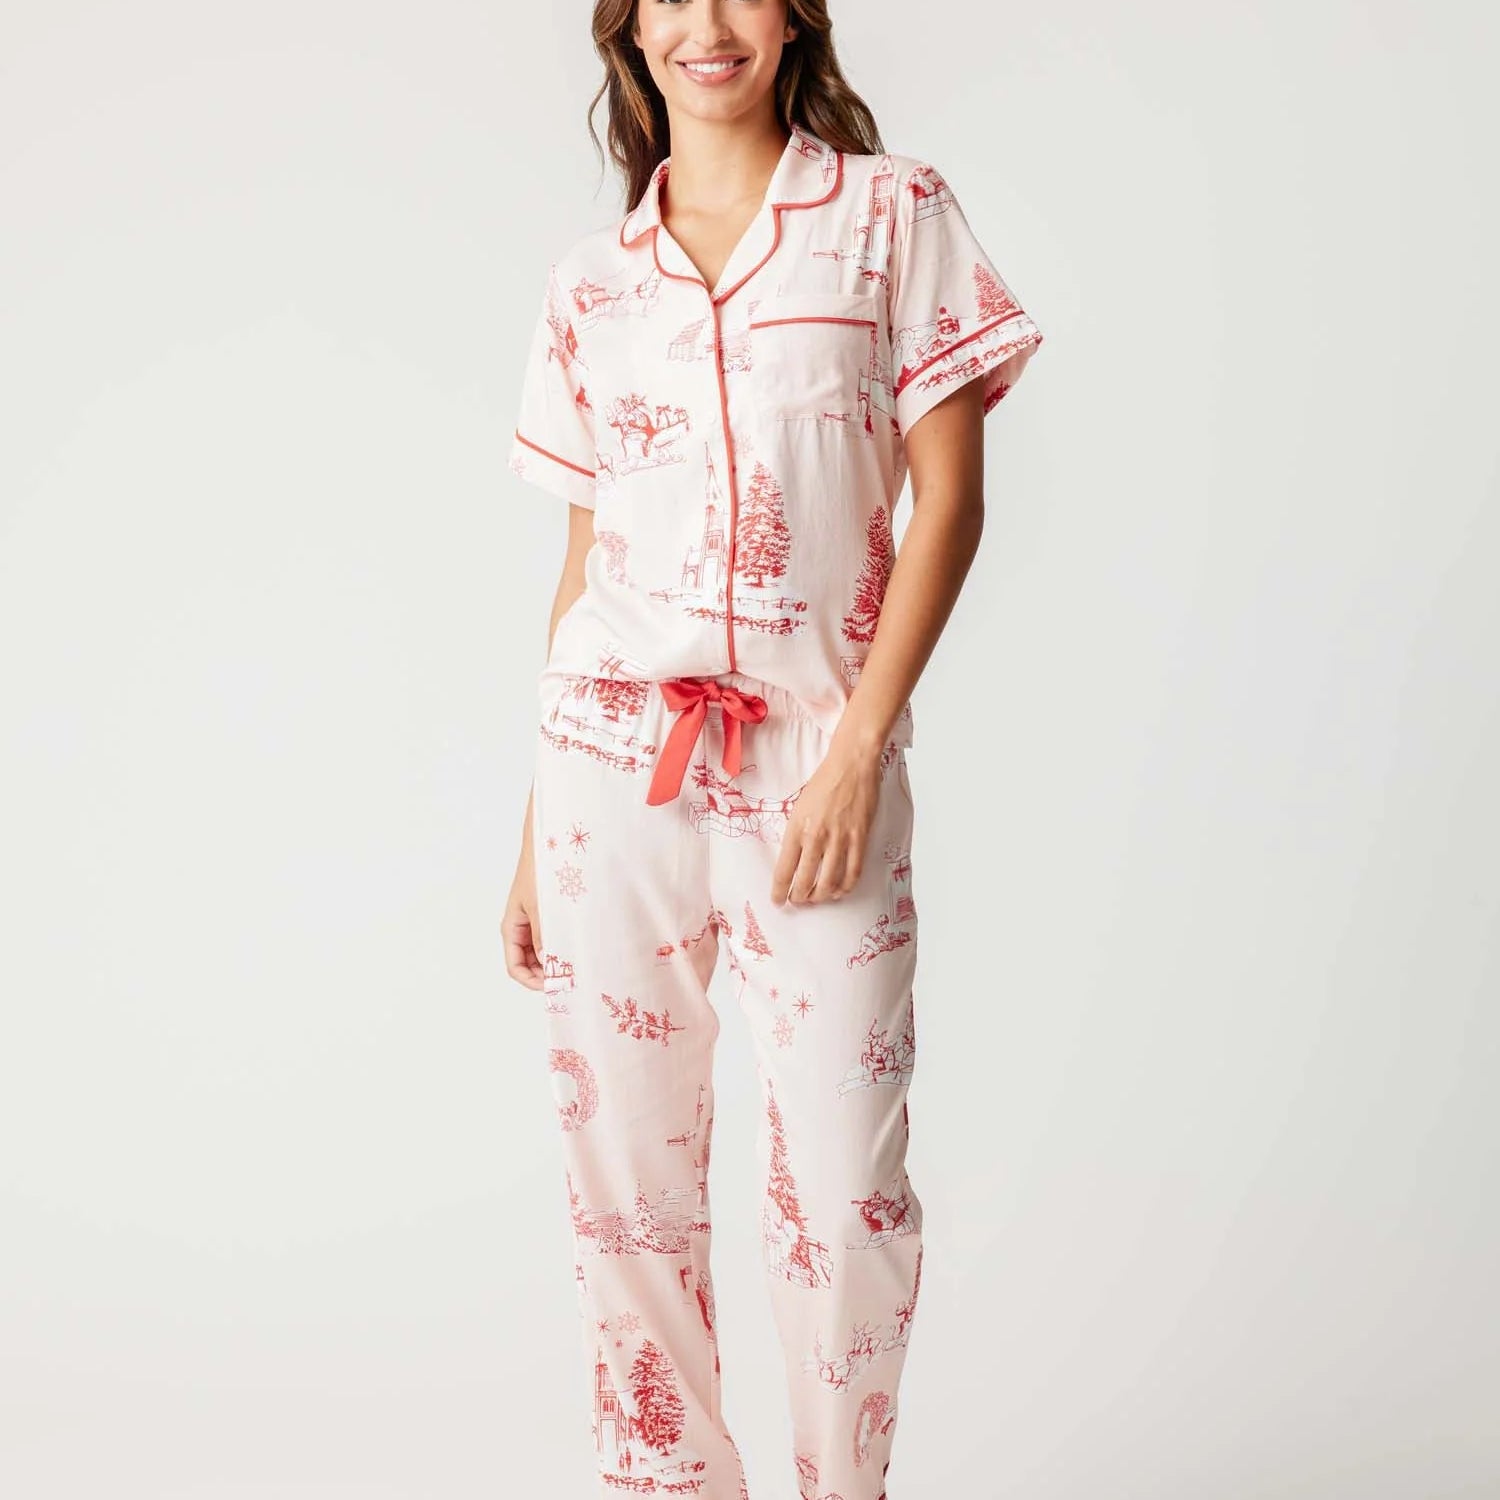 'Katie Kime' Holiday Toile Pajama Set